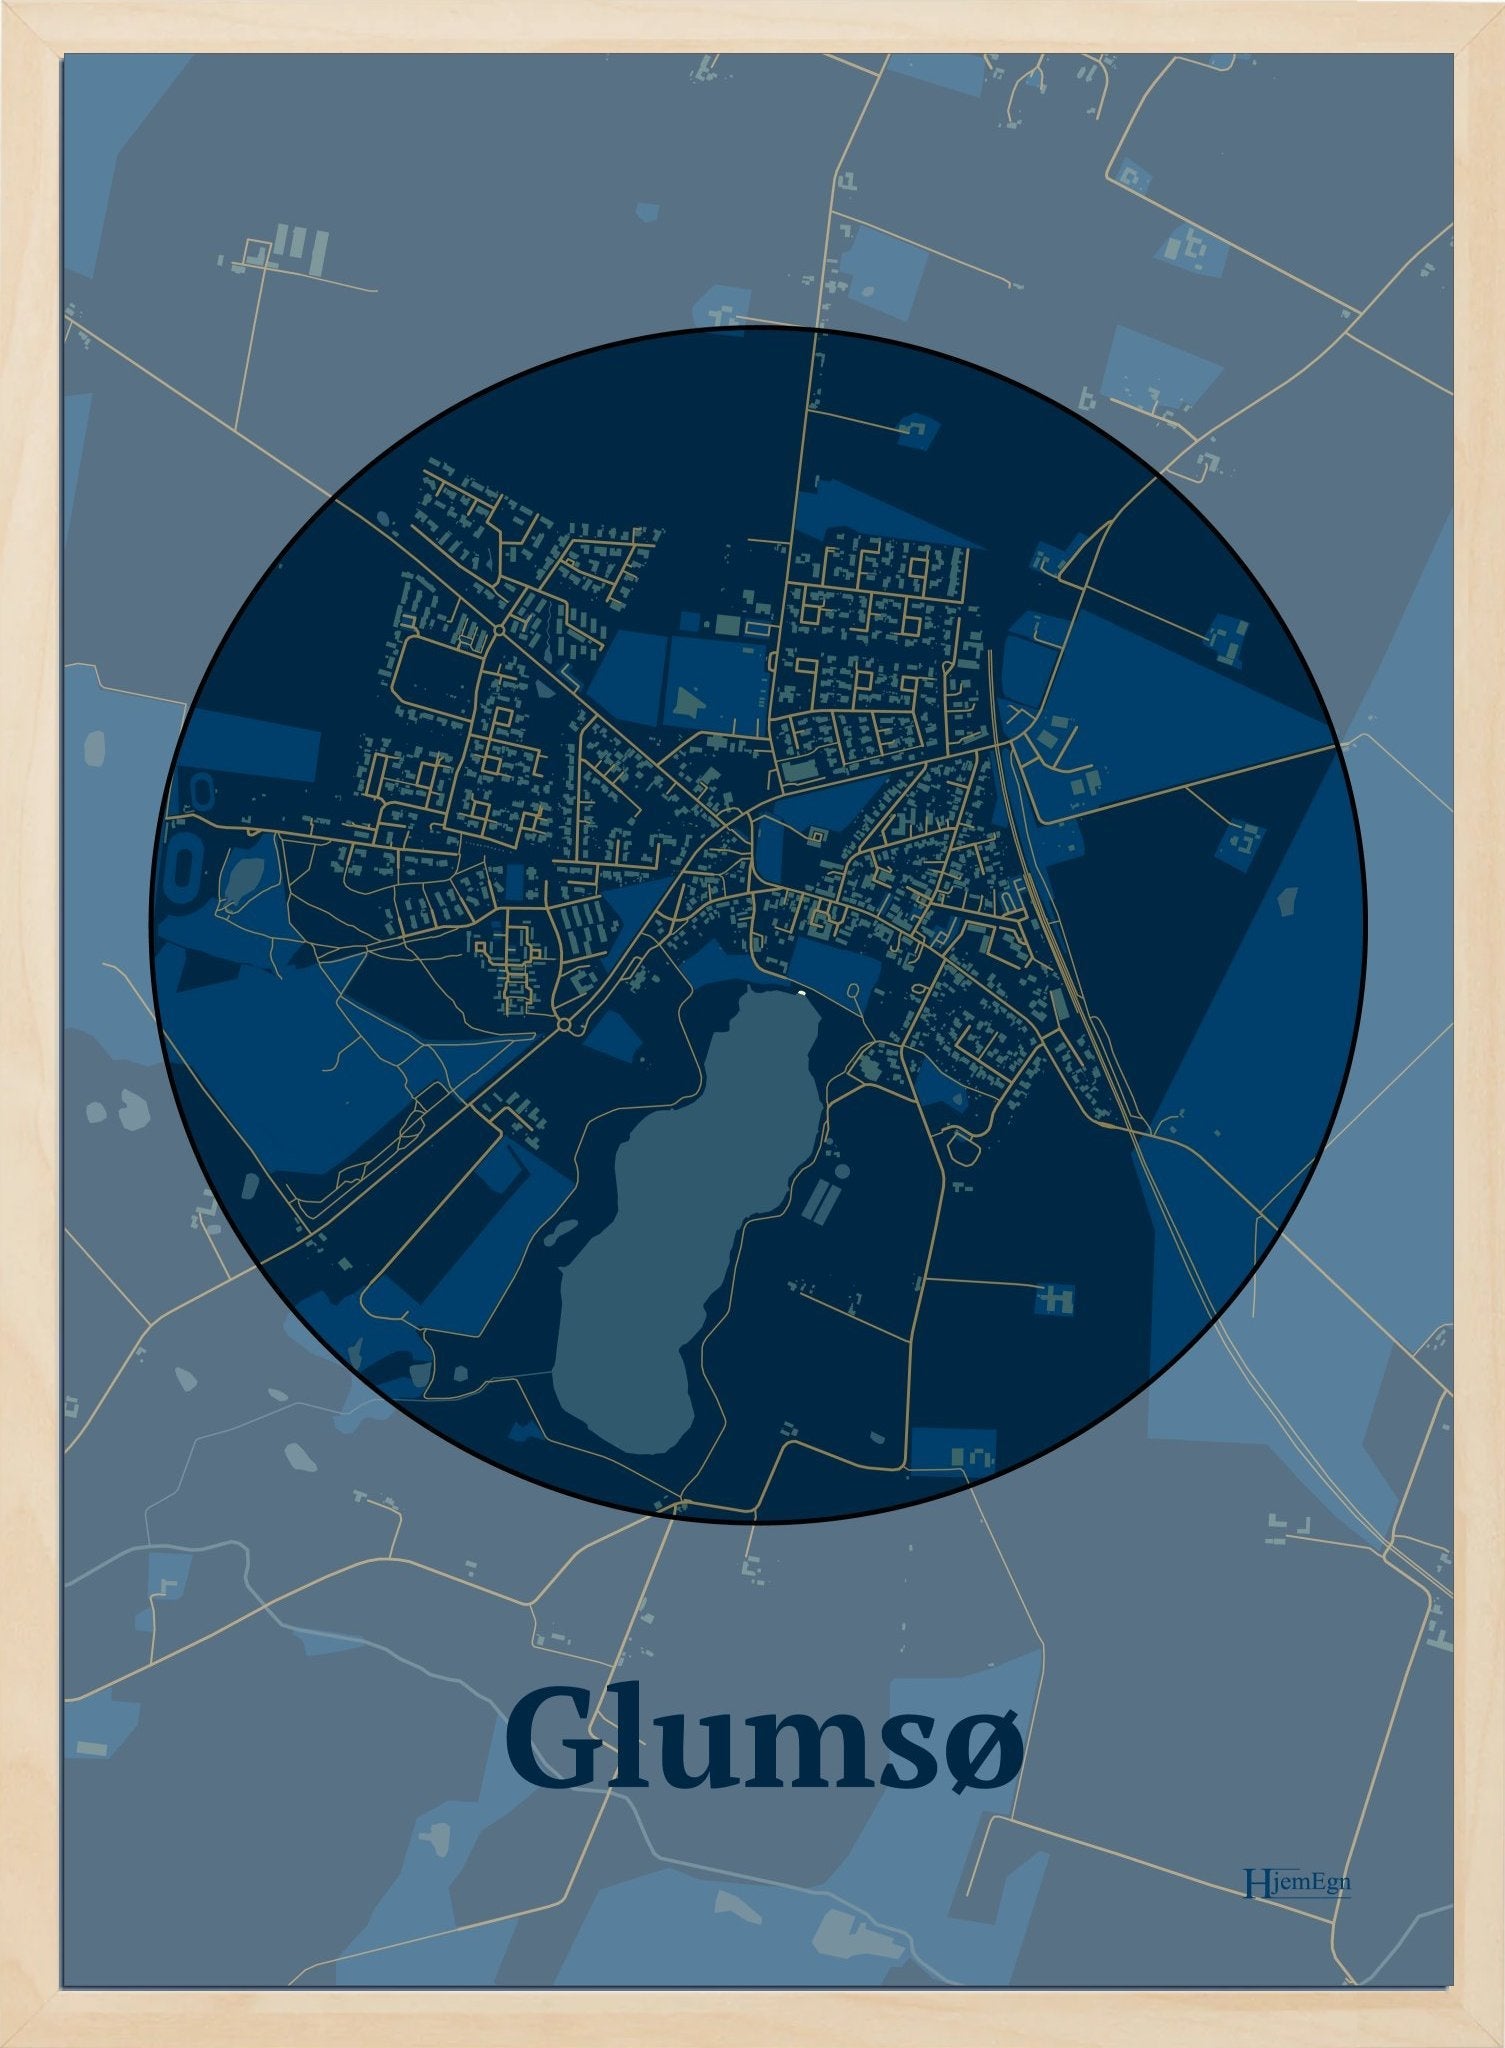 Glumsø plakat i farve mørk blå og HjemEgn.dk design centrum. Design bykort for Glumsø